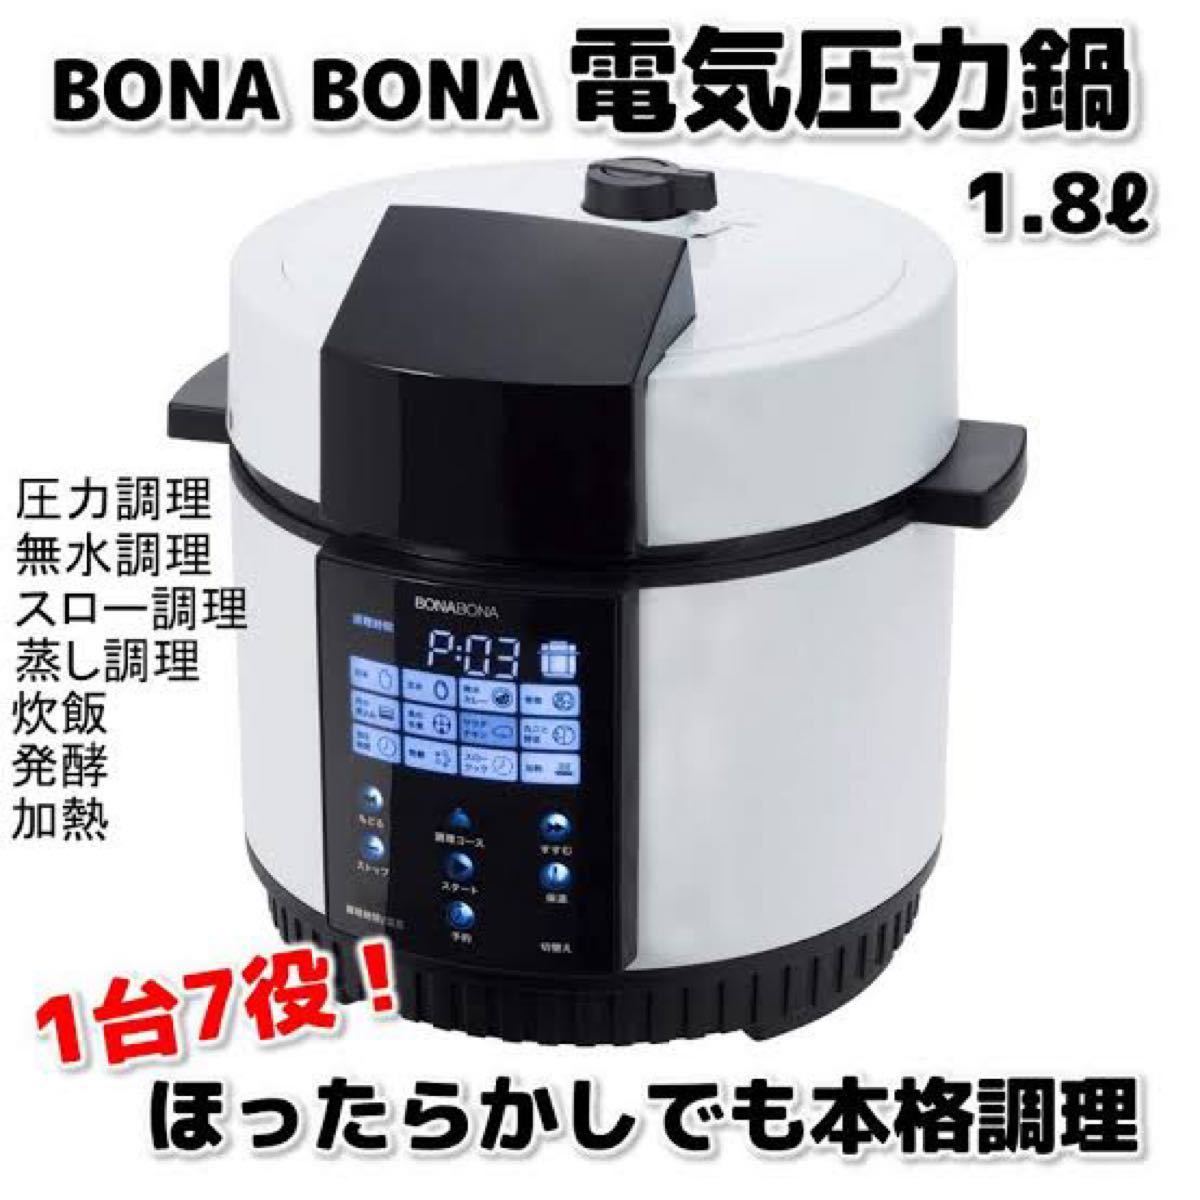 【新品】CCP 電気圧力鍋 BD-PC71-WH BONA BONA